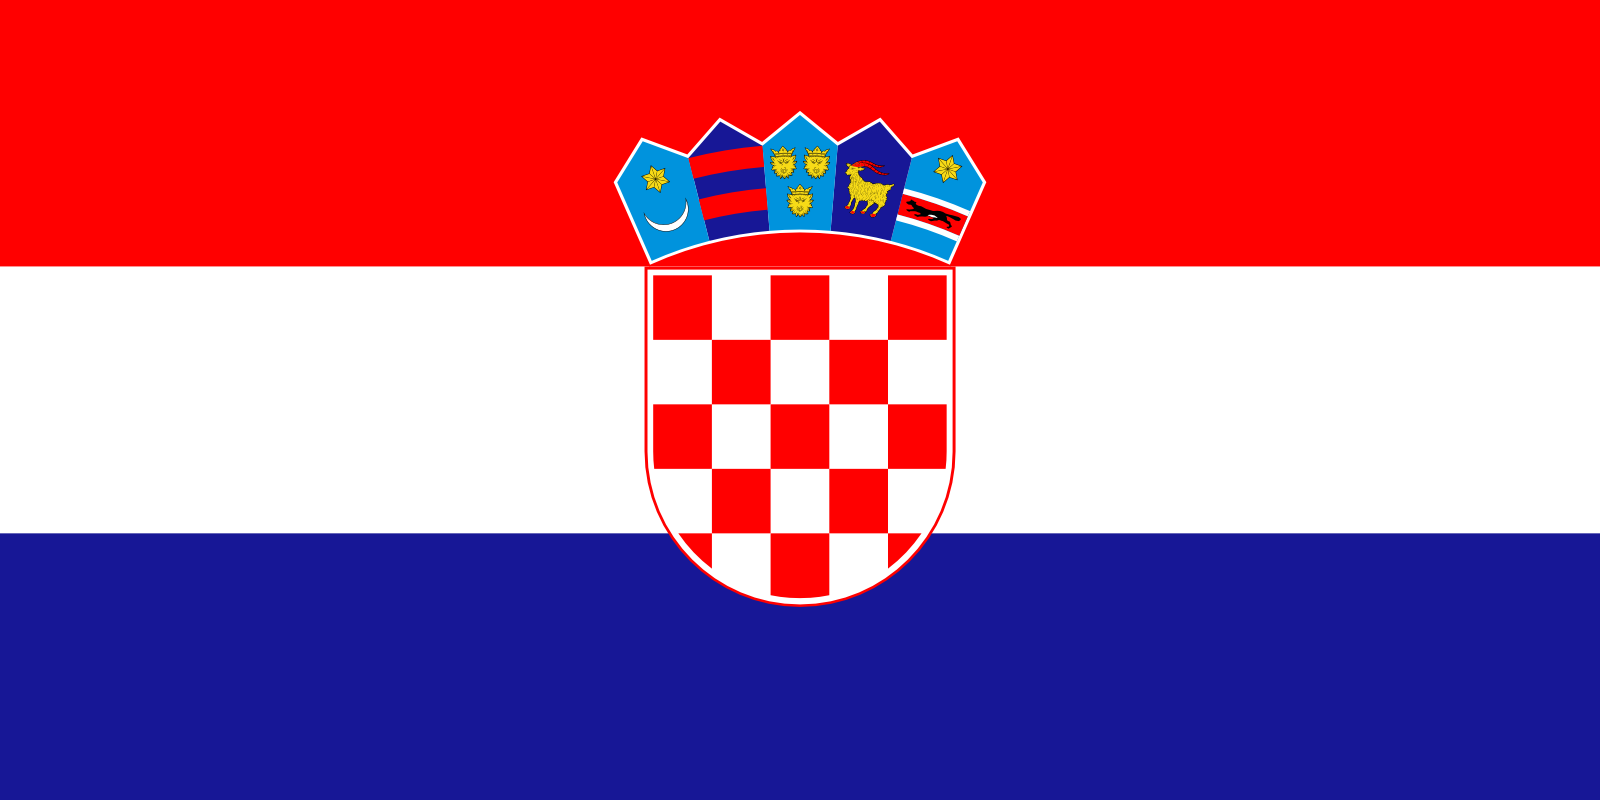 Bild der Staatsflagge Kroatien - mit einer Auflösung von 1600x800 - Europa